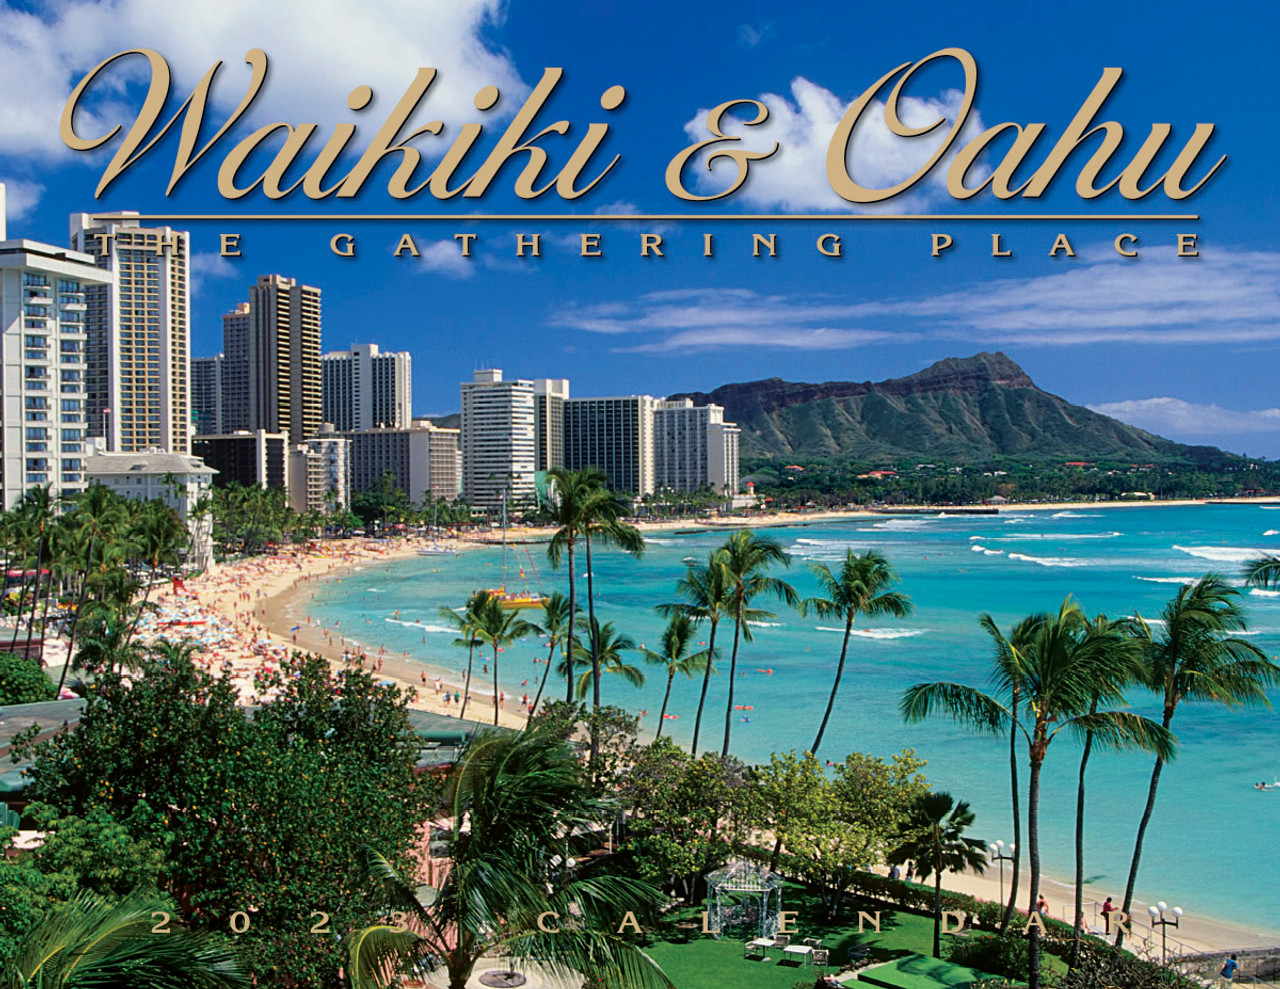 2023 Waikiki & Oahu Calendar